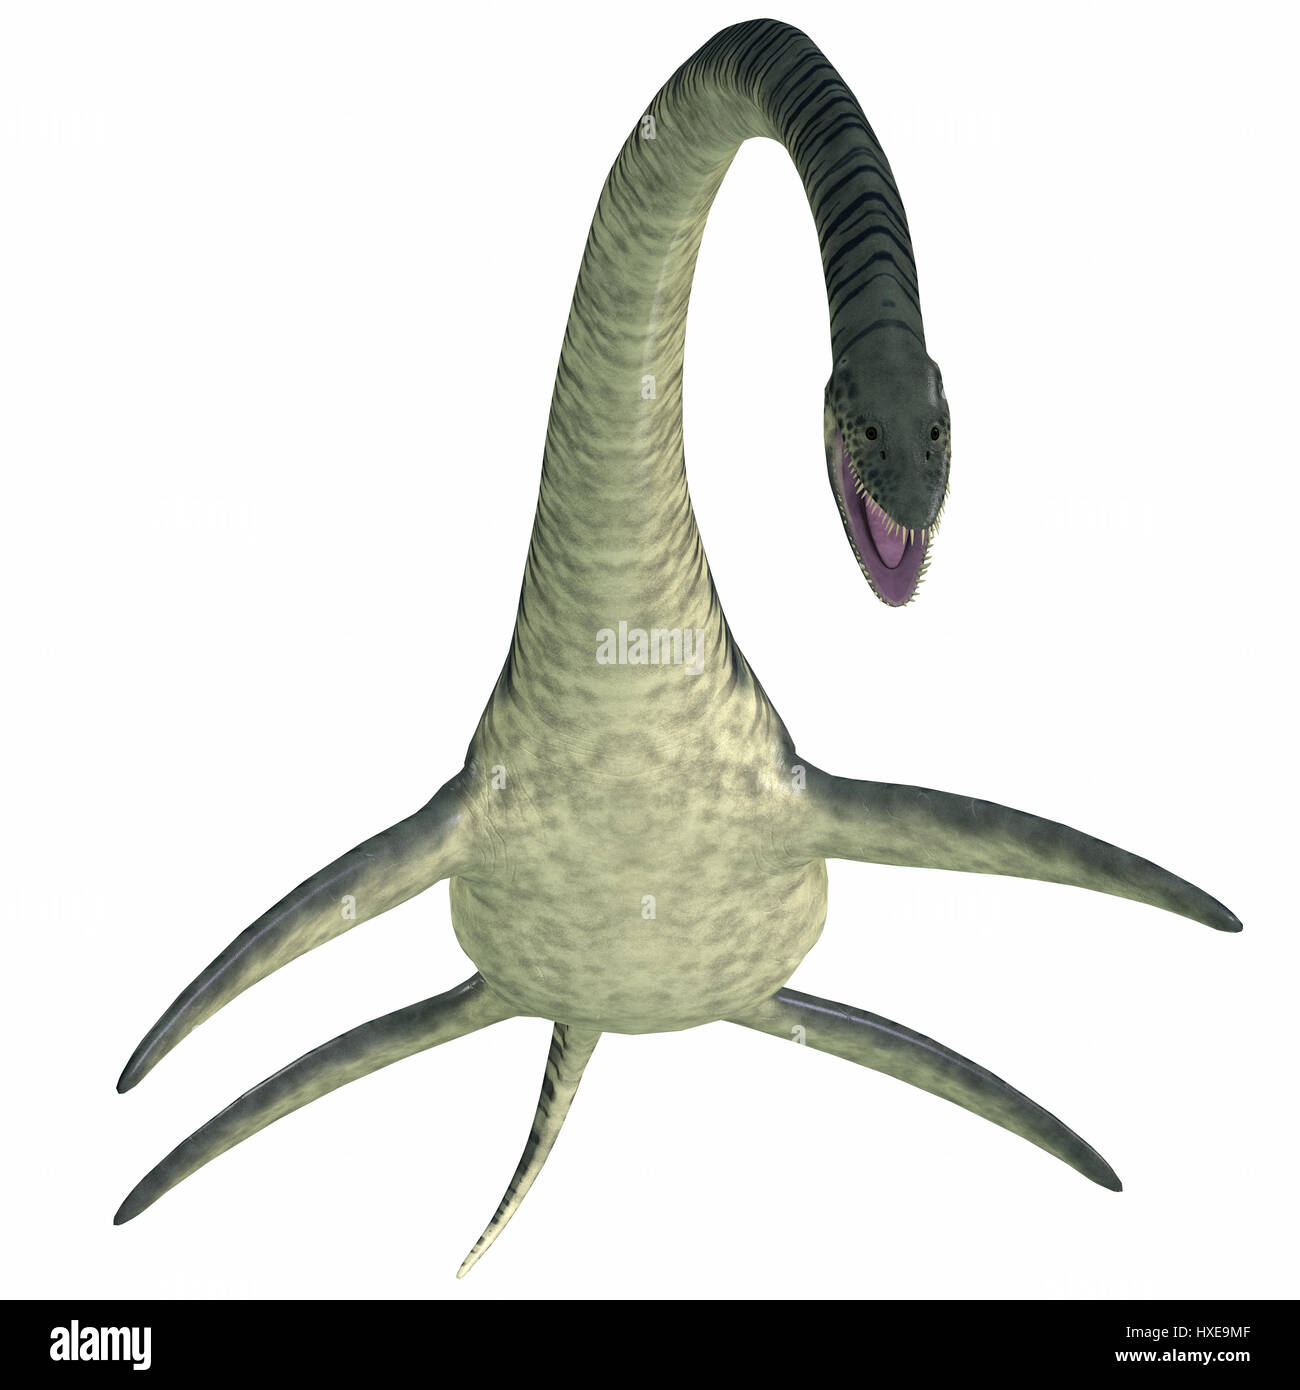 Elasmosaurus era un plesiosaurio de reptiles marinos que vivieron en América del Norte los mares en el período Cretácico. Foto de stock